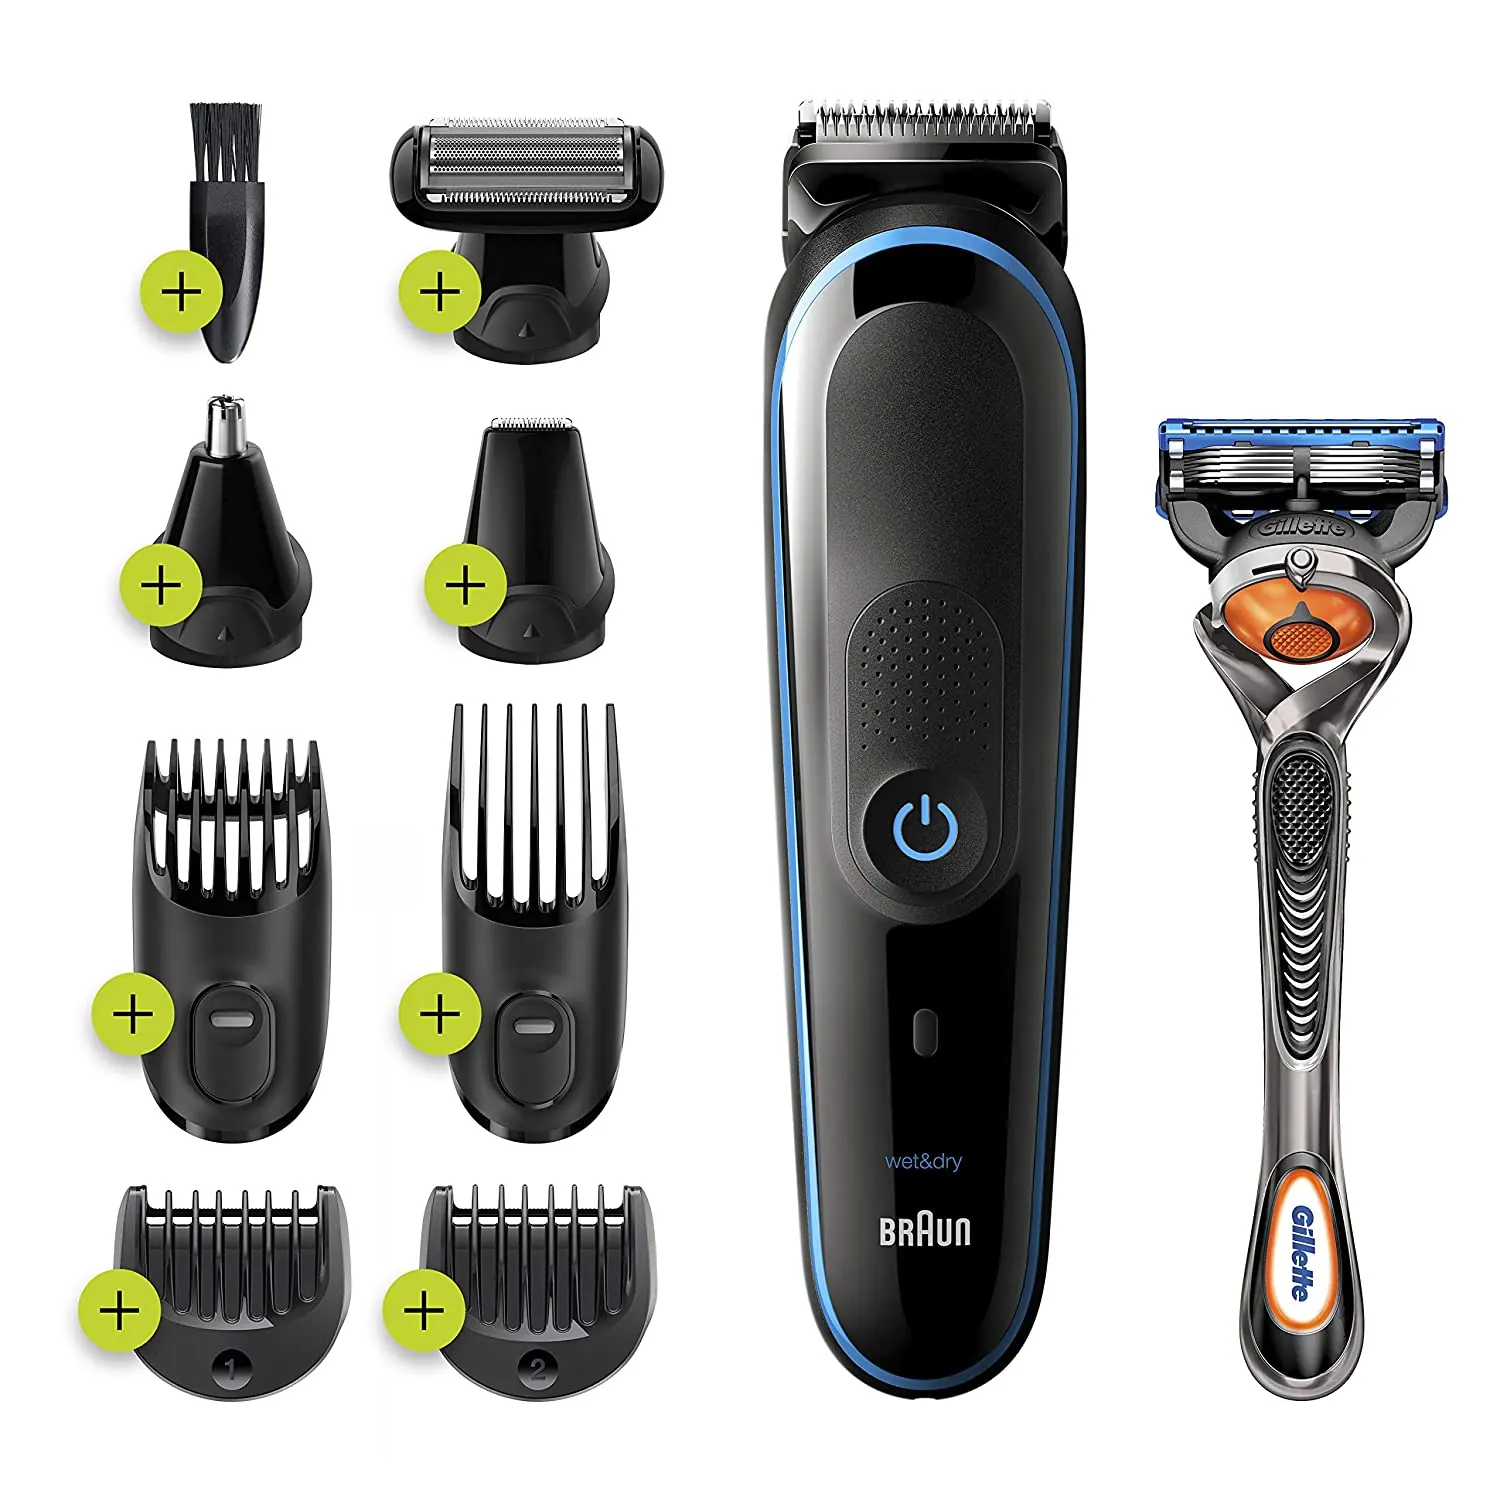 Braun All-in-one trimmer MGK5280 9-in-1 trimmer 7 attachments and Gillette Fusion5 ProGlide razor